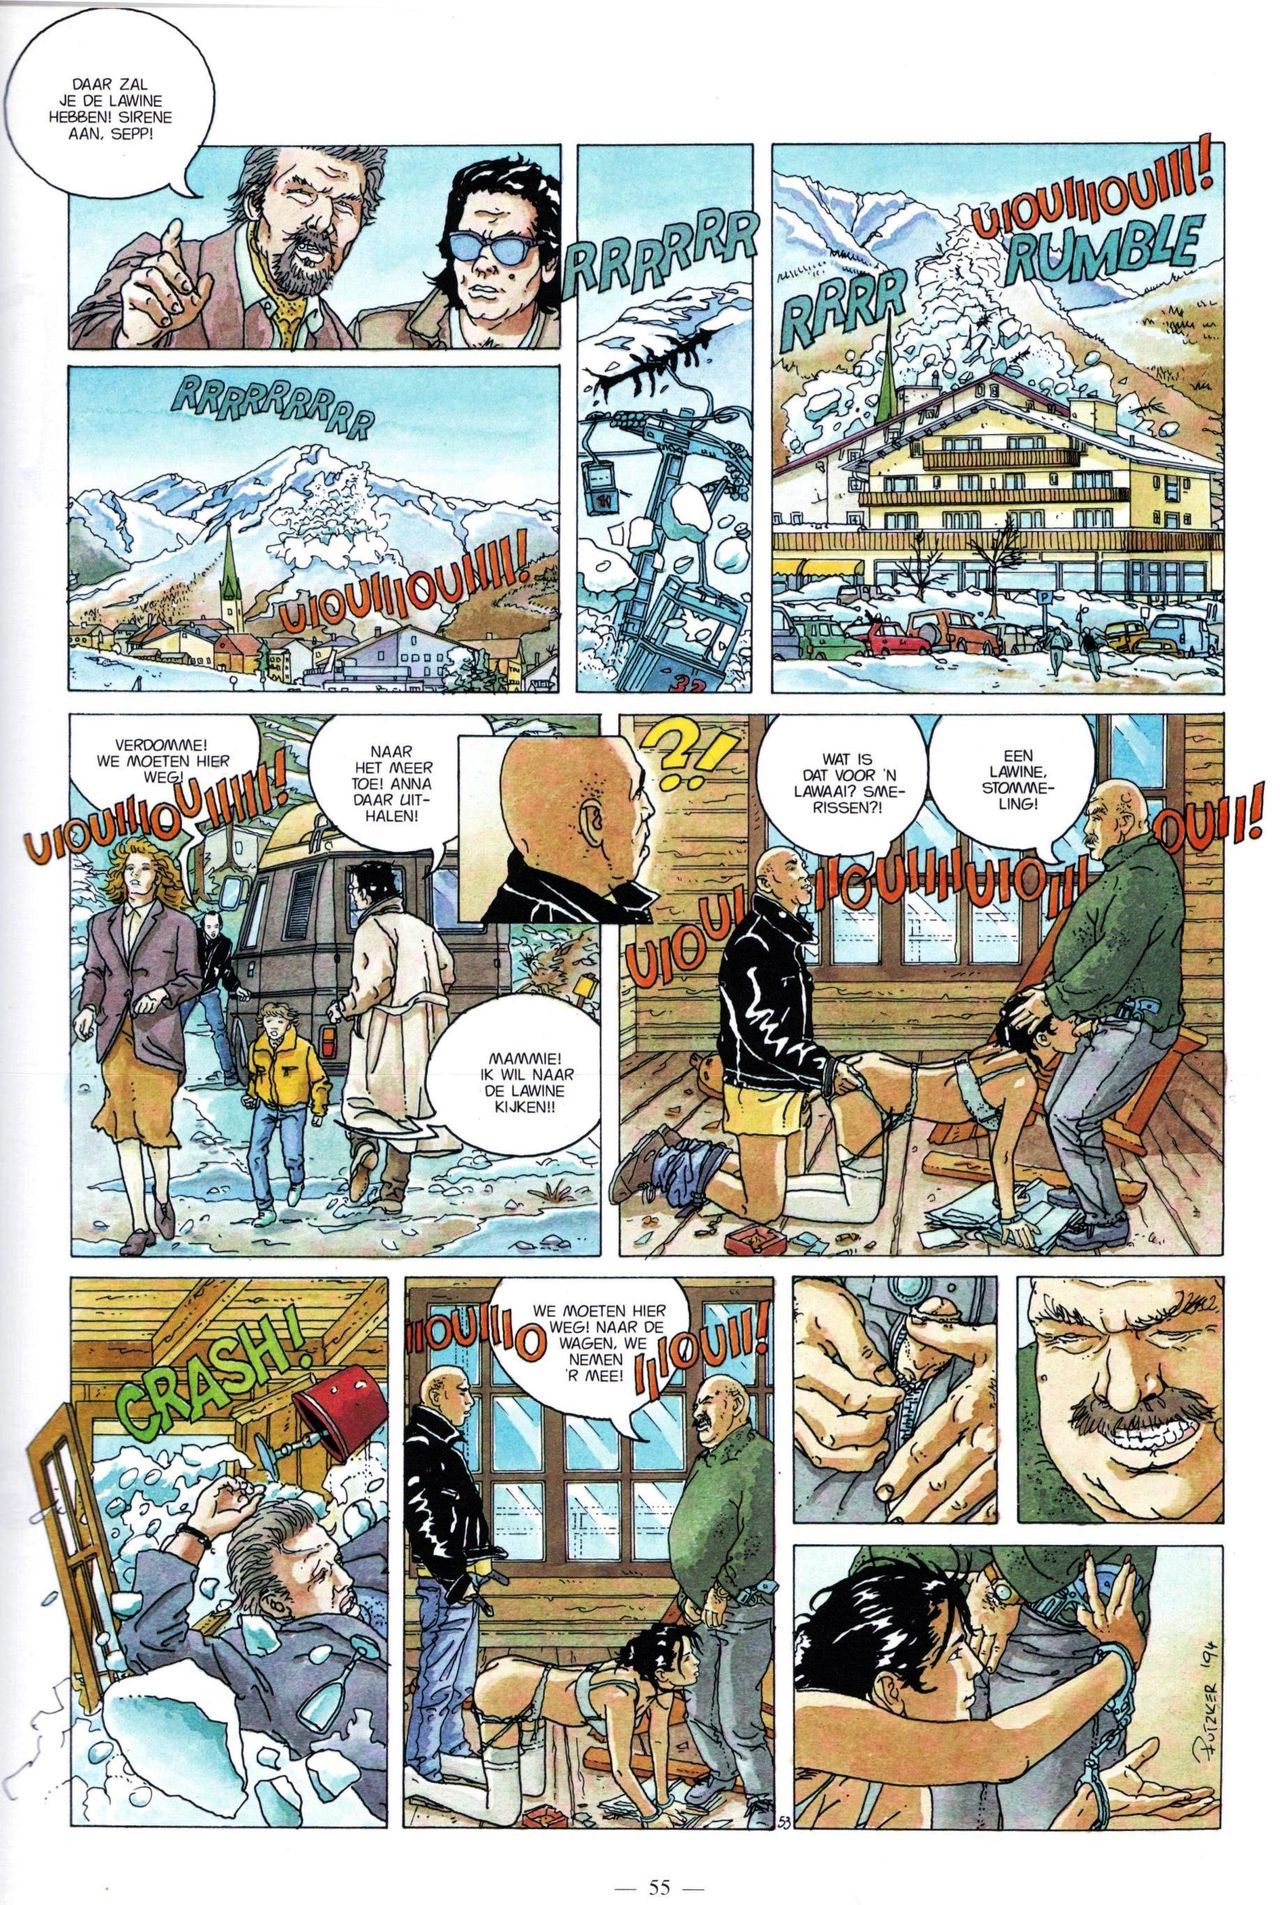 Anna Stein - 03 - De Laatste Alpengloed (Dutch) Engelstalige strips die op deze site staan, hier is de Nederlandse uitgave! 55